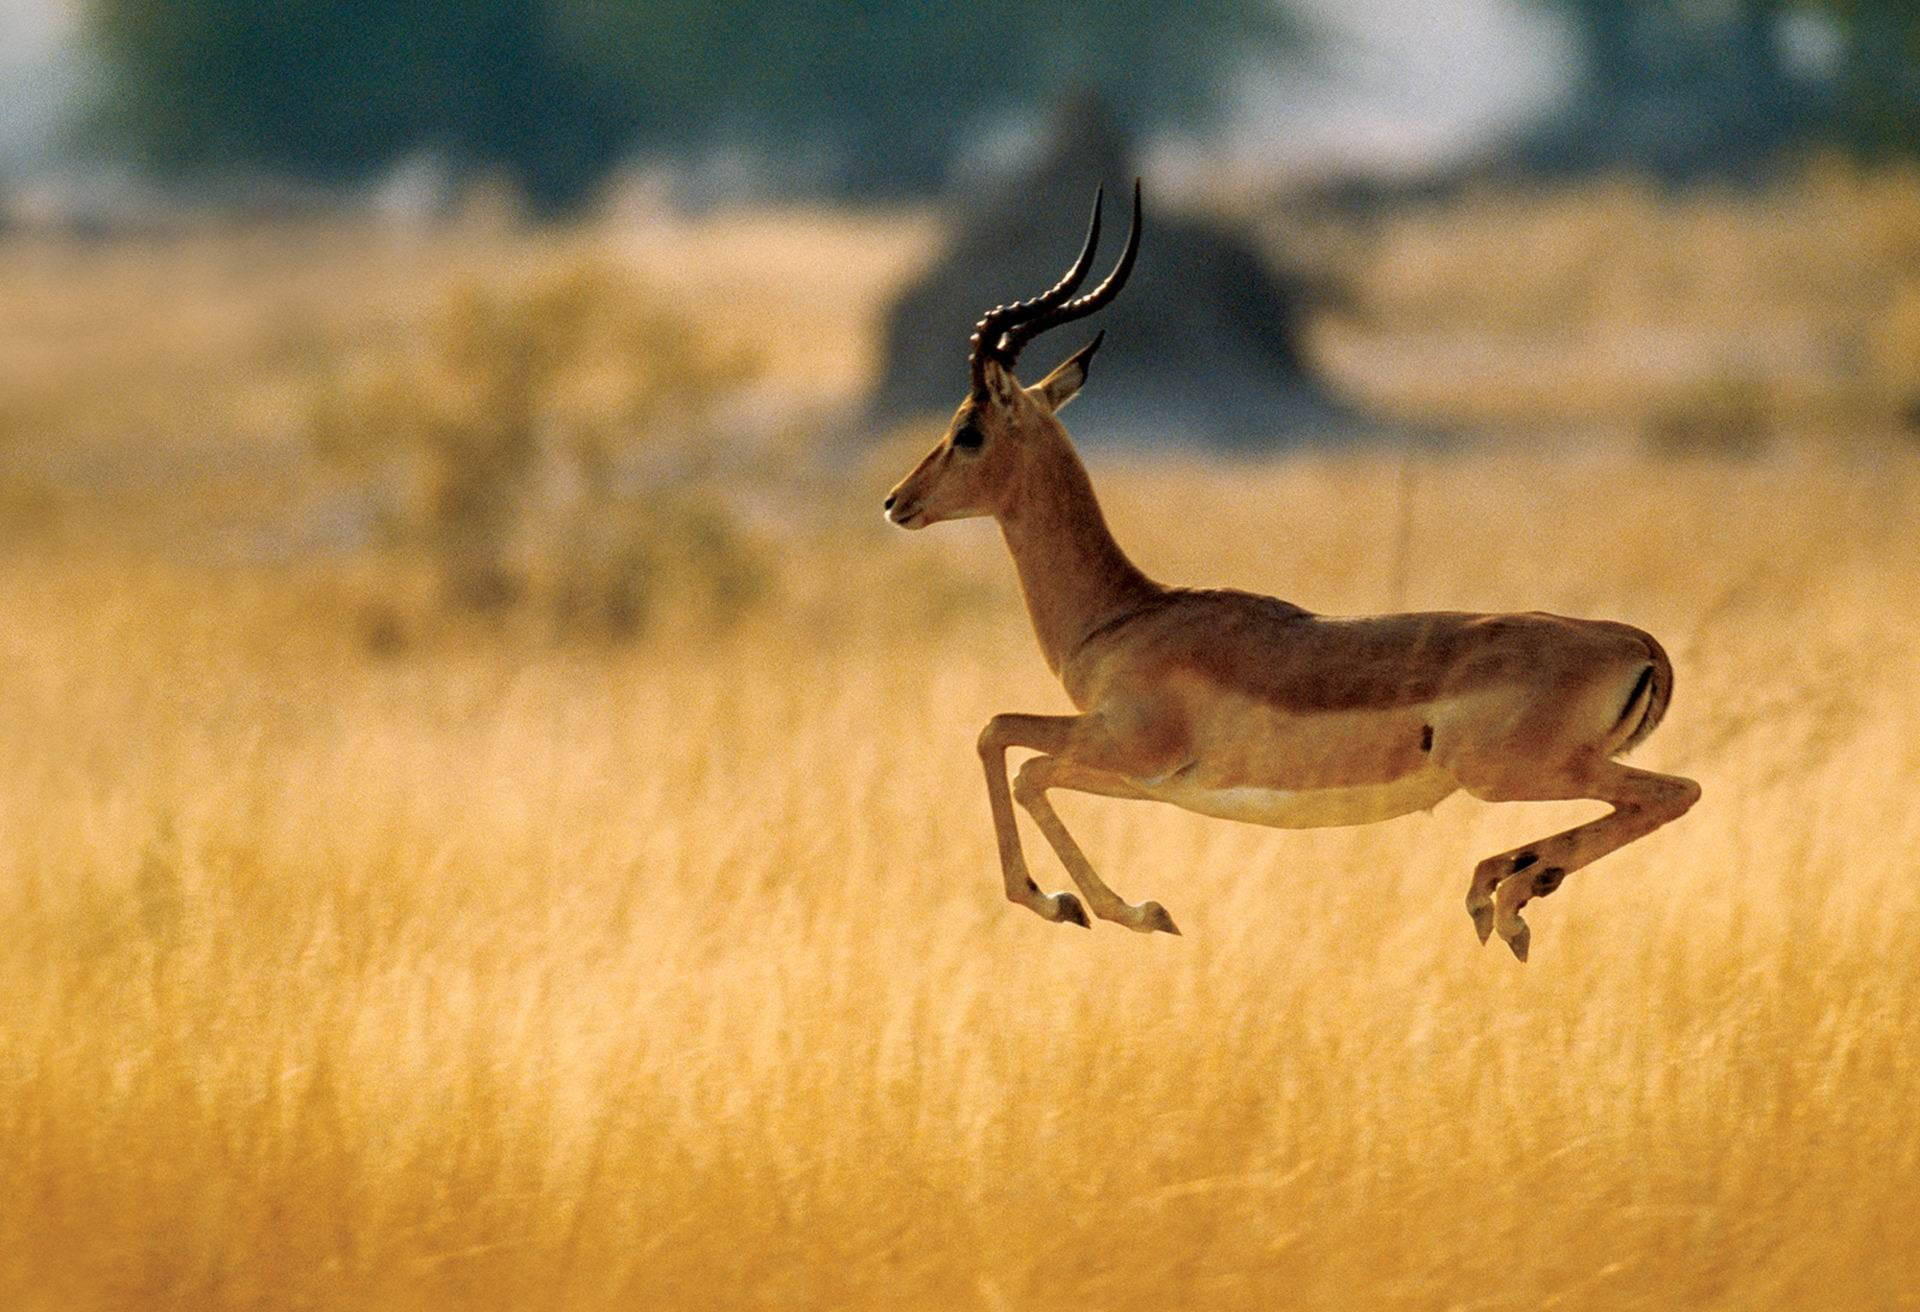 Caption: Majestic Antelope Leap In Botswana Background